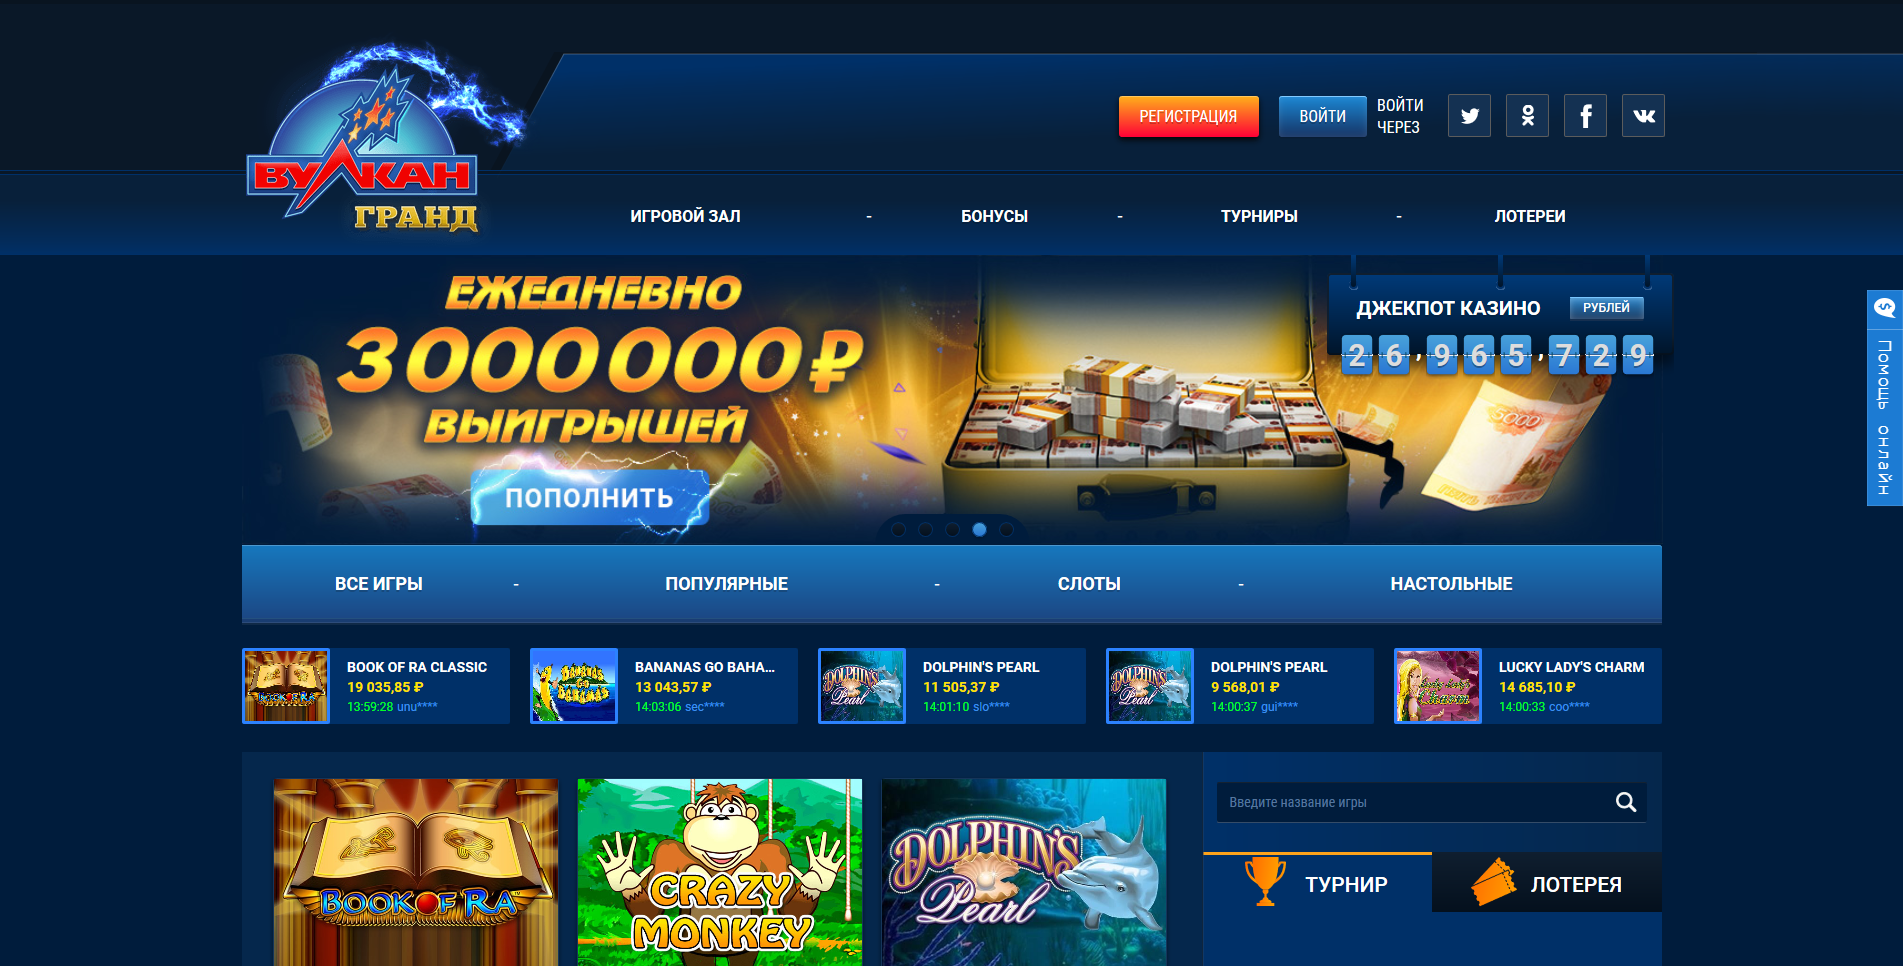 Онлайн казино вулкан гранд бонусы расположение карт в джекпот игре